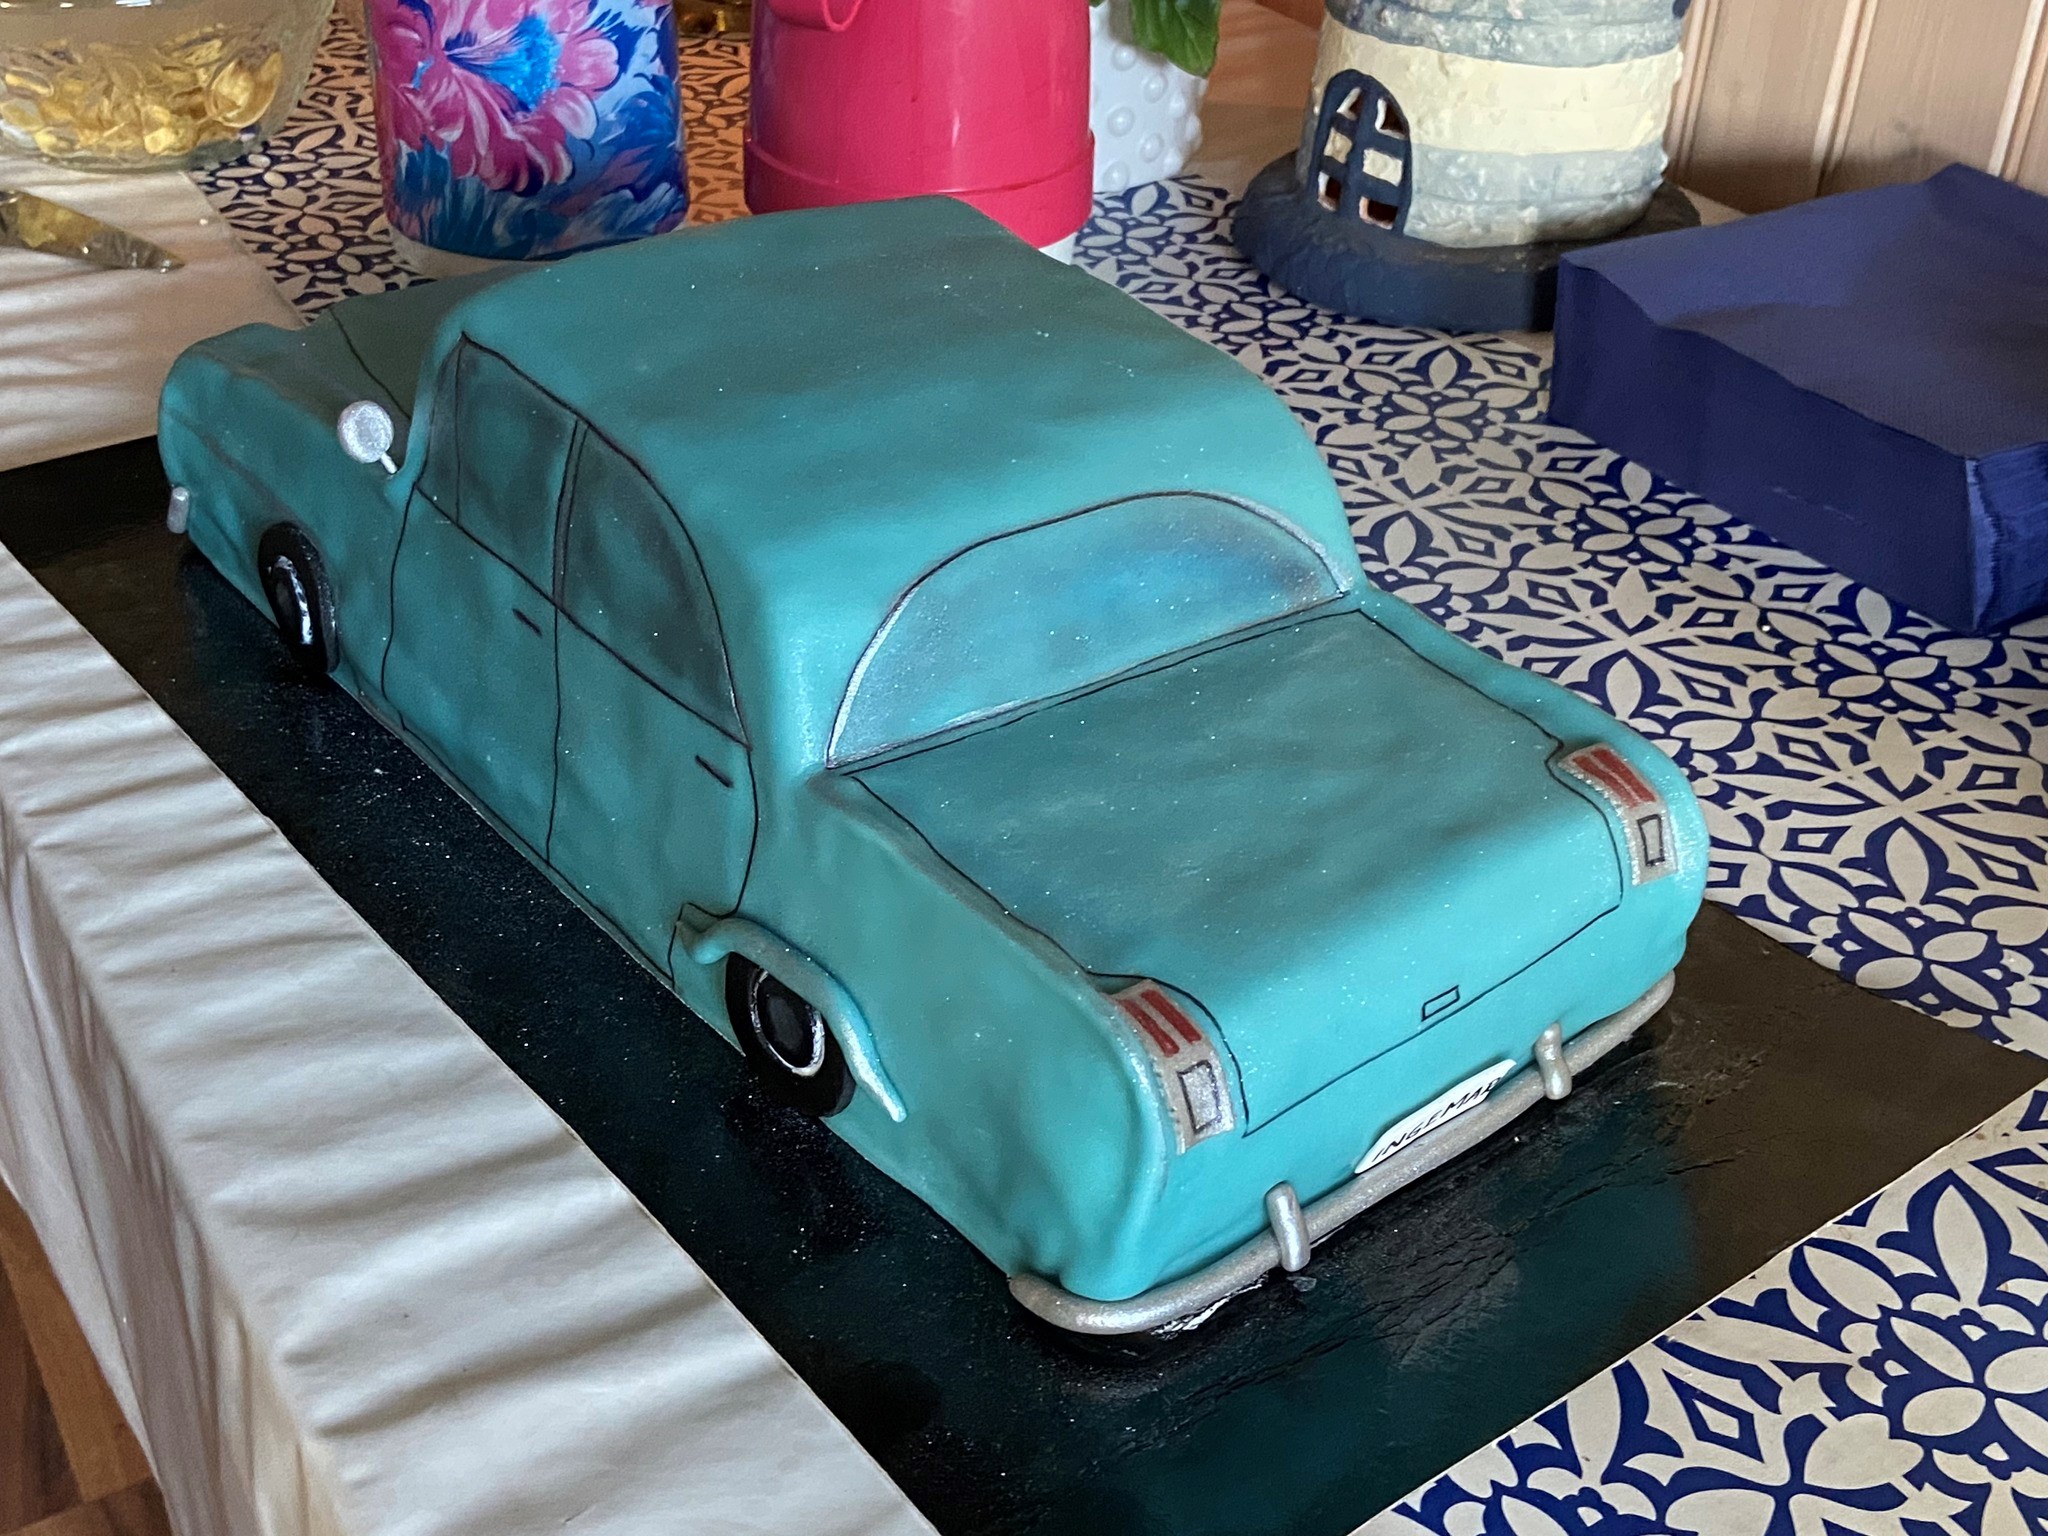 Bilden visare en prinsesstårta i formen av en blå veteranbil